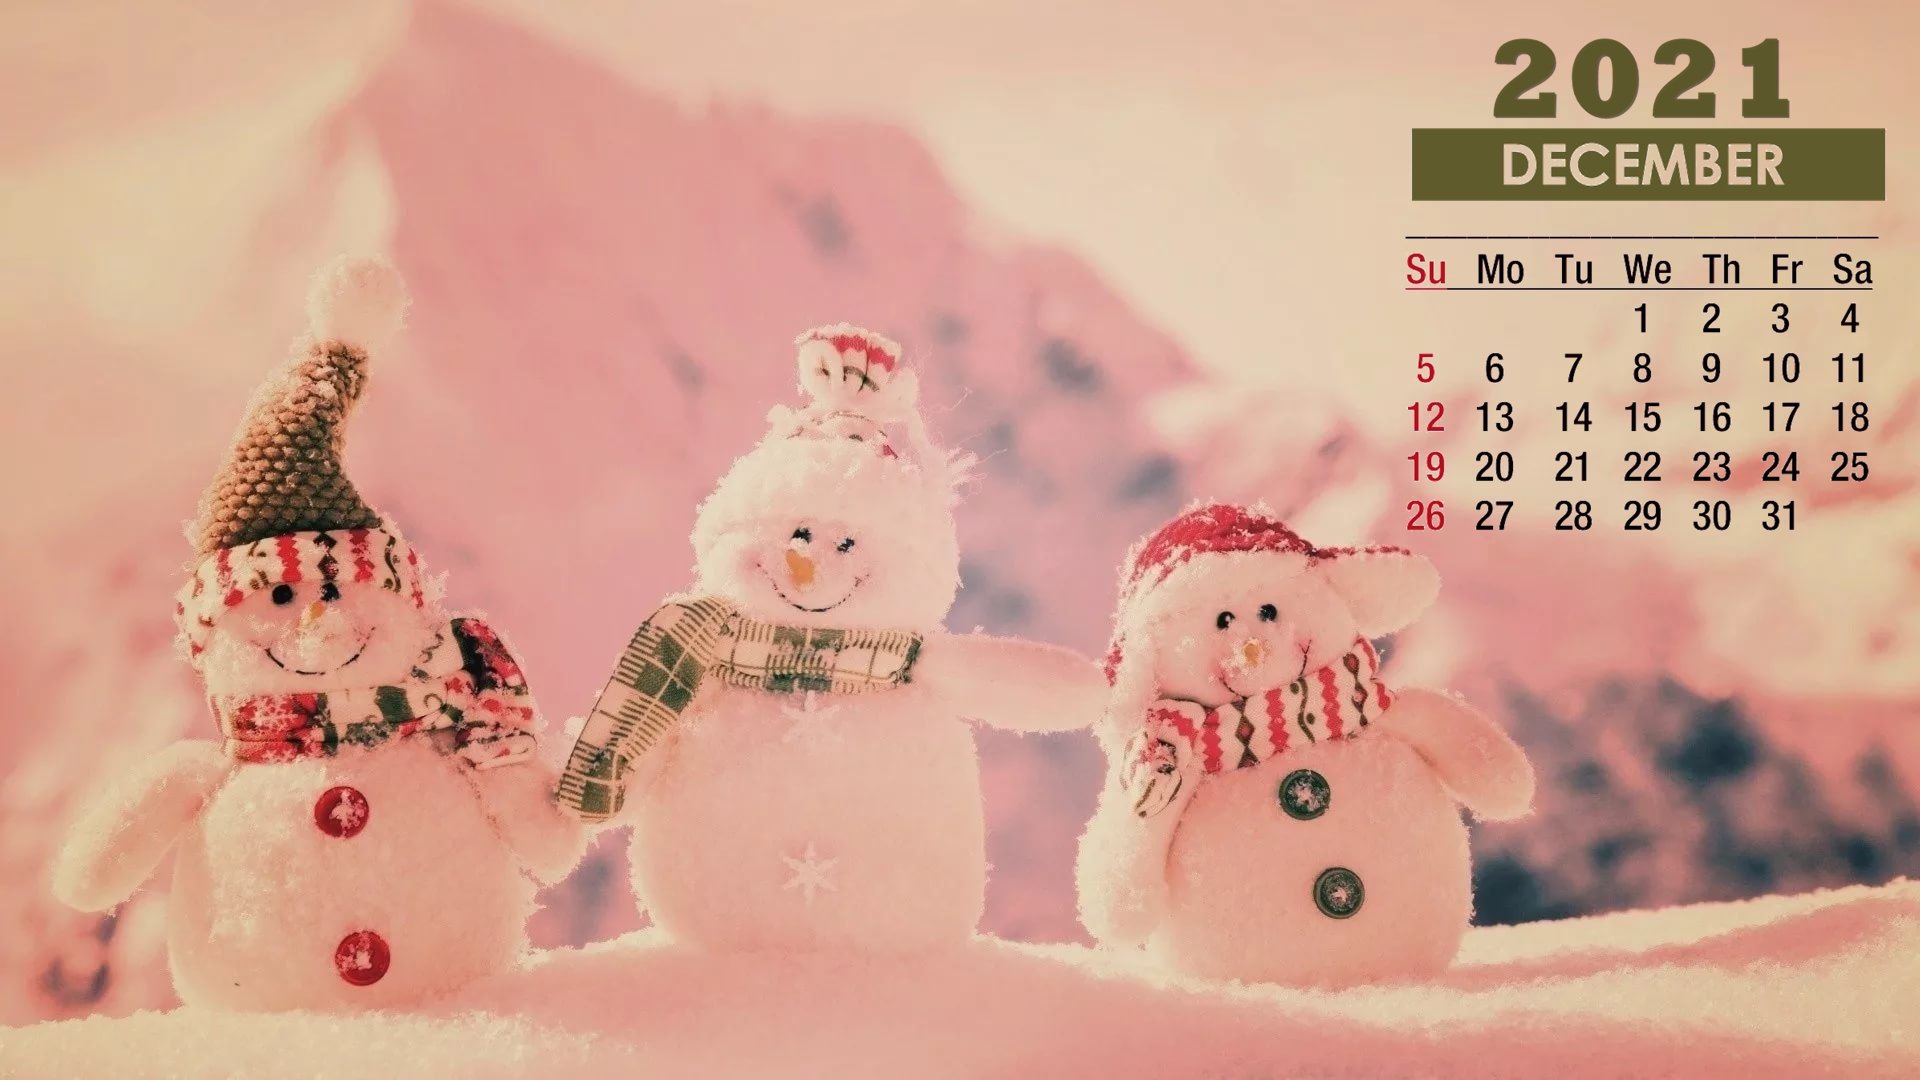 December 2021 Calendar Snowman Friends Wallpaper 72202